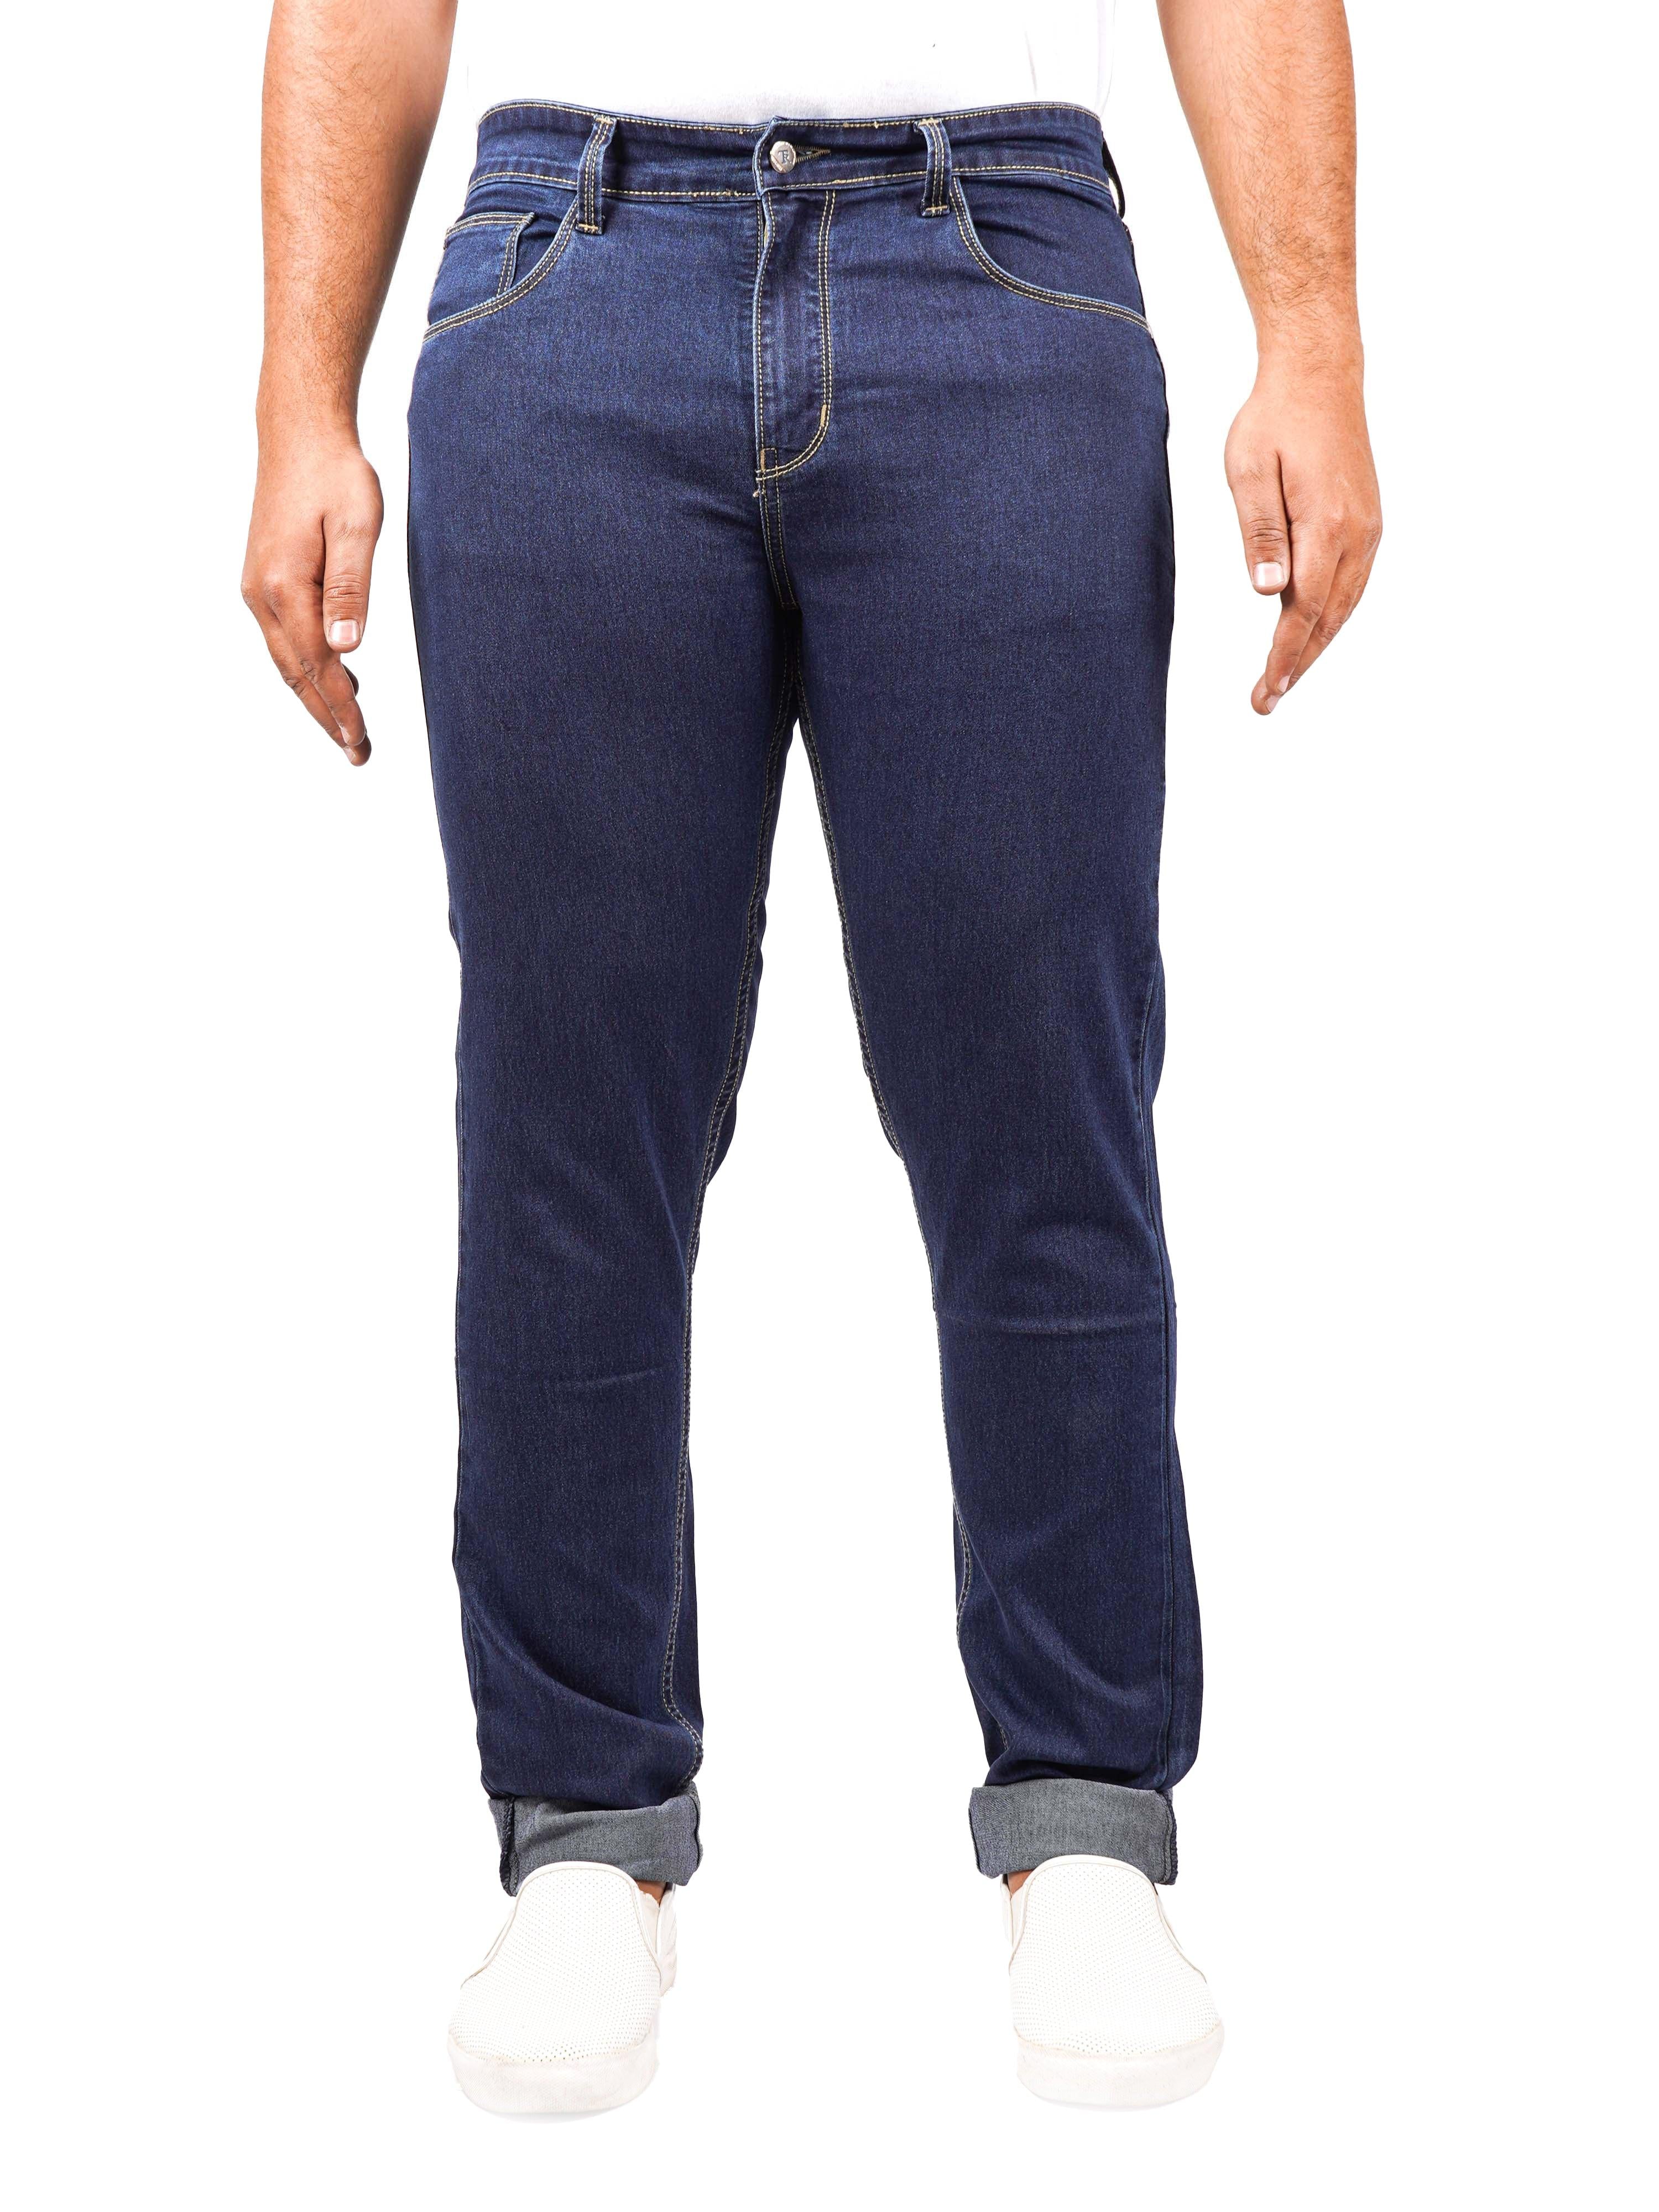 Precision Fit Men's Slim-Fit Blue Jeans